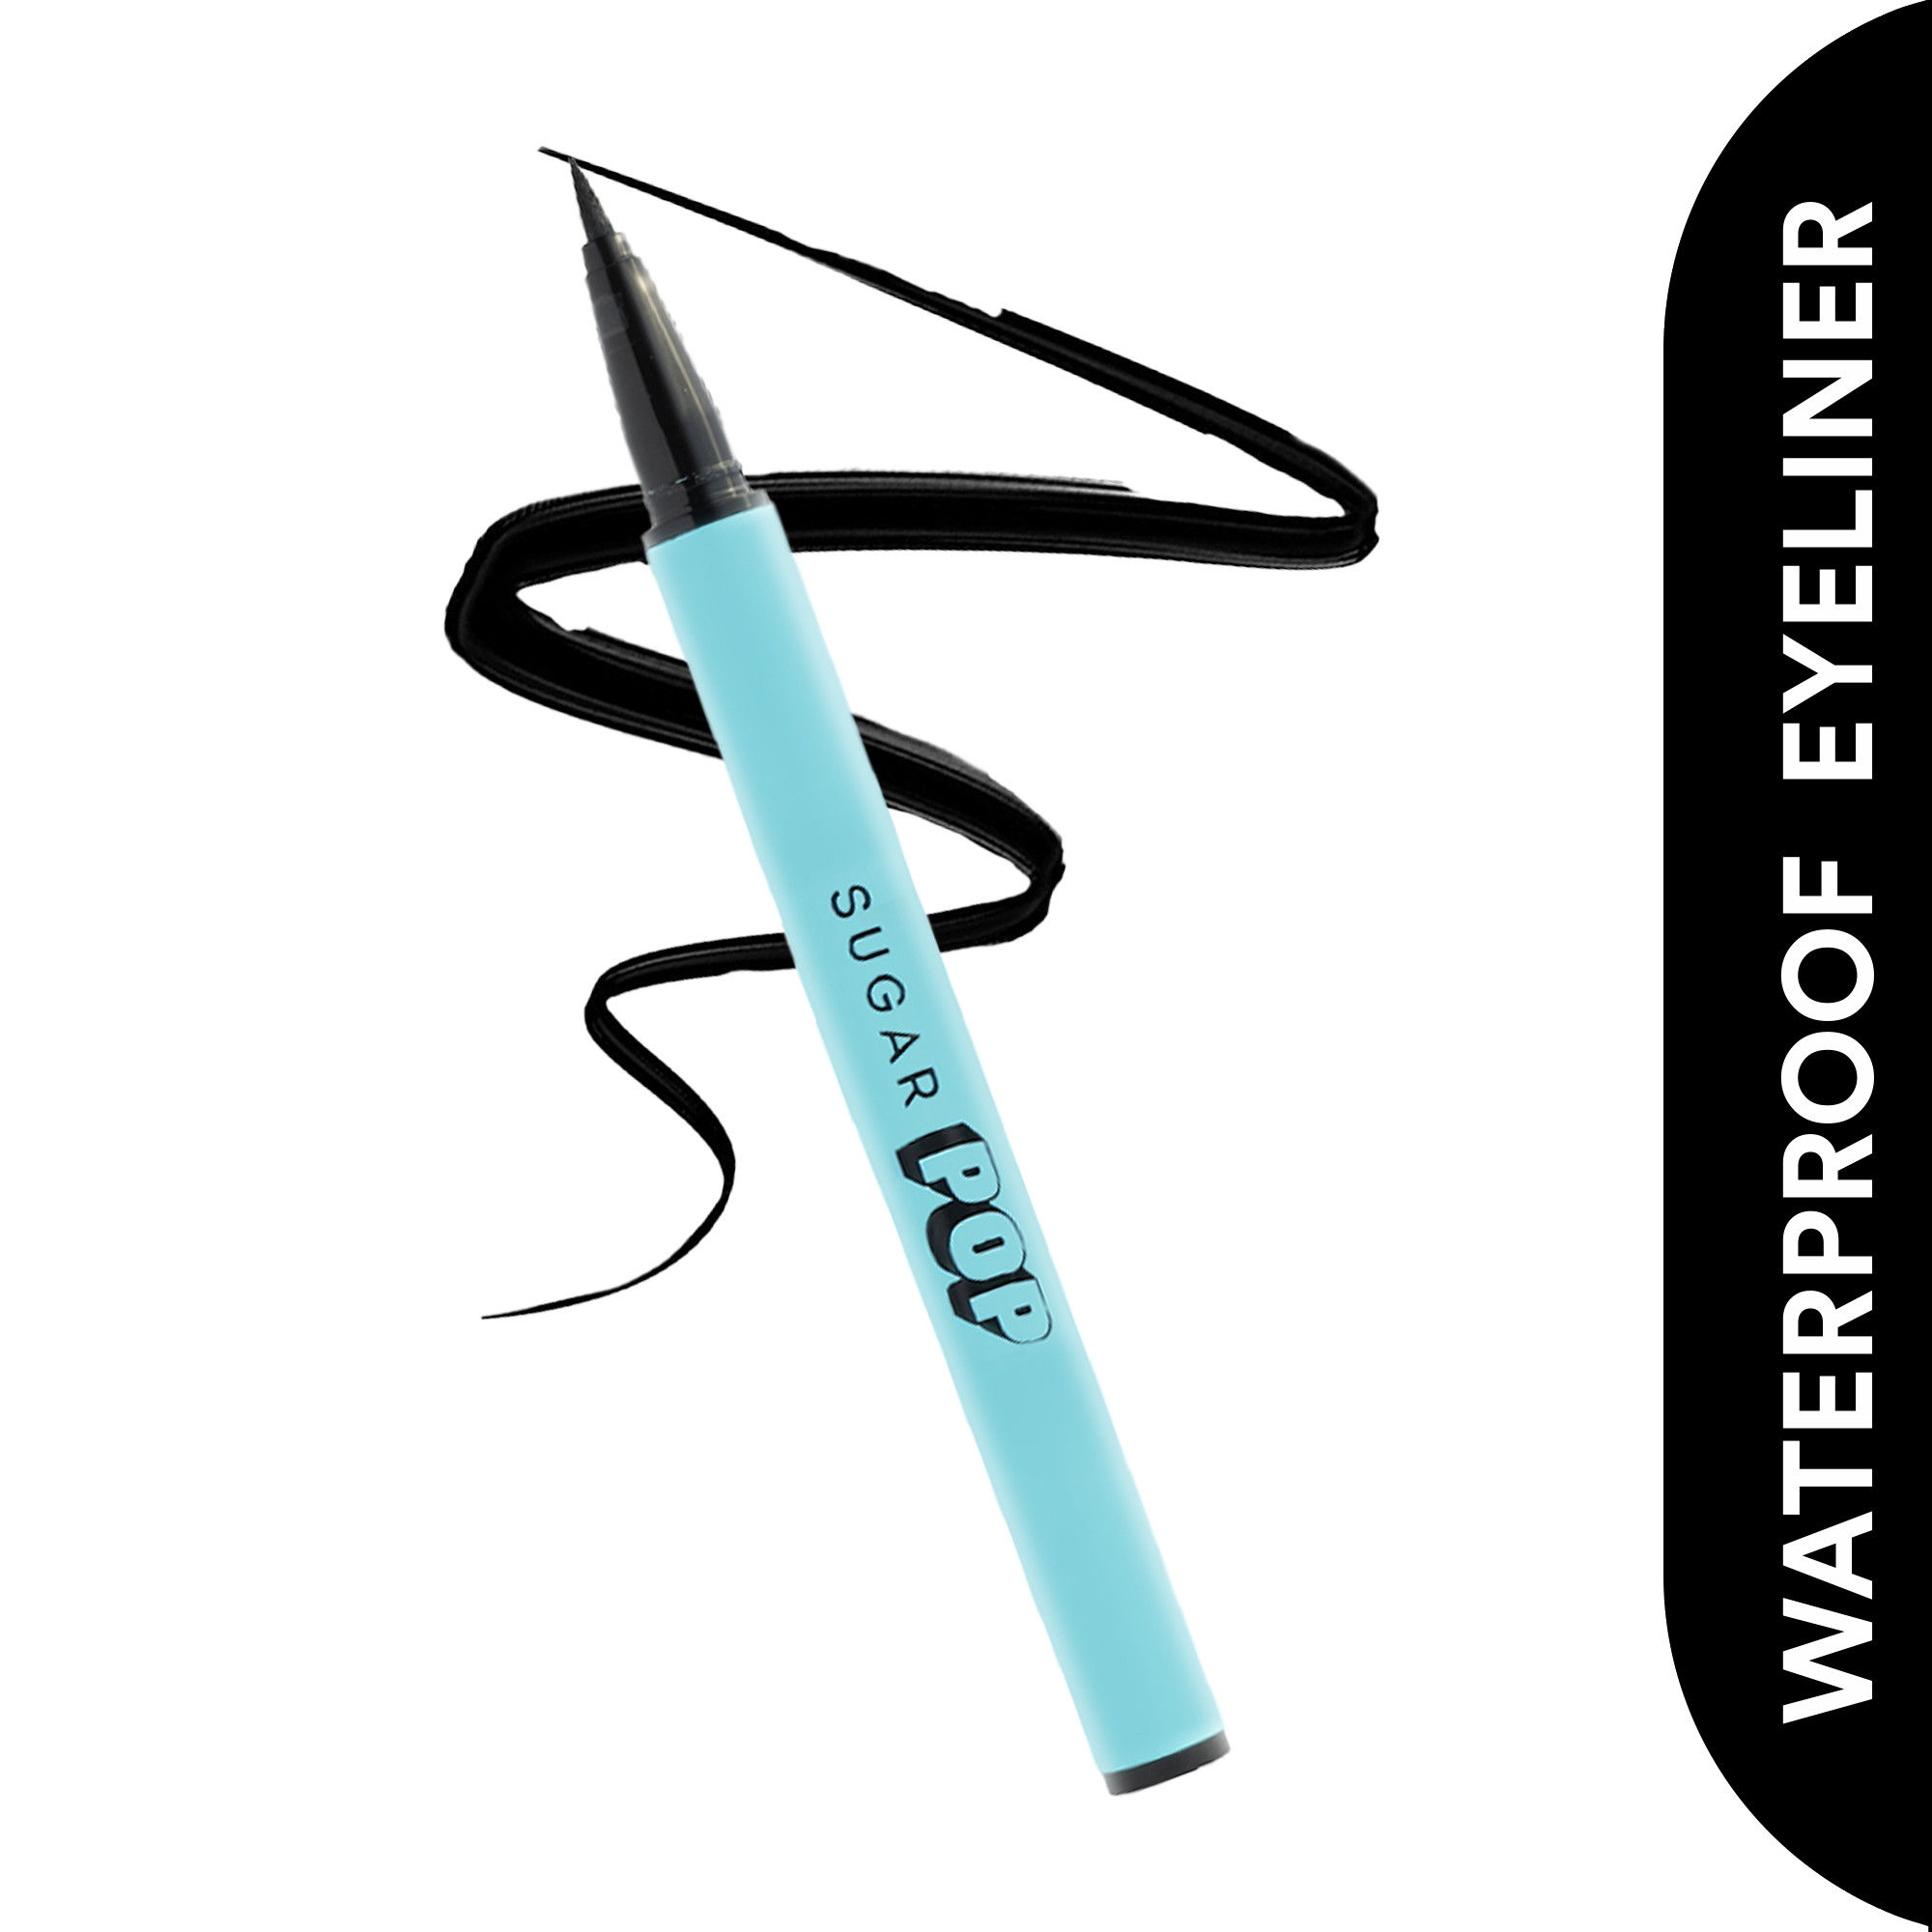 SUGAR POP Waterproof Eyeliner - 01 Black